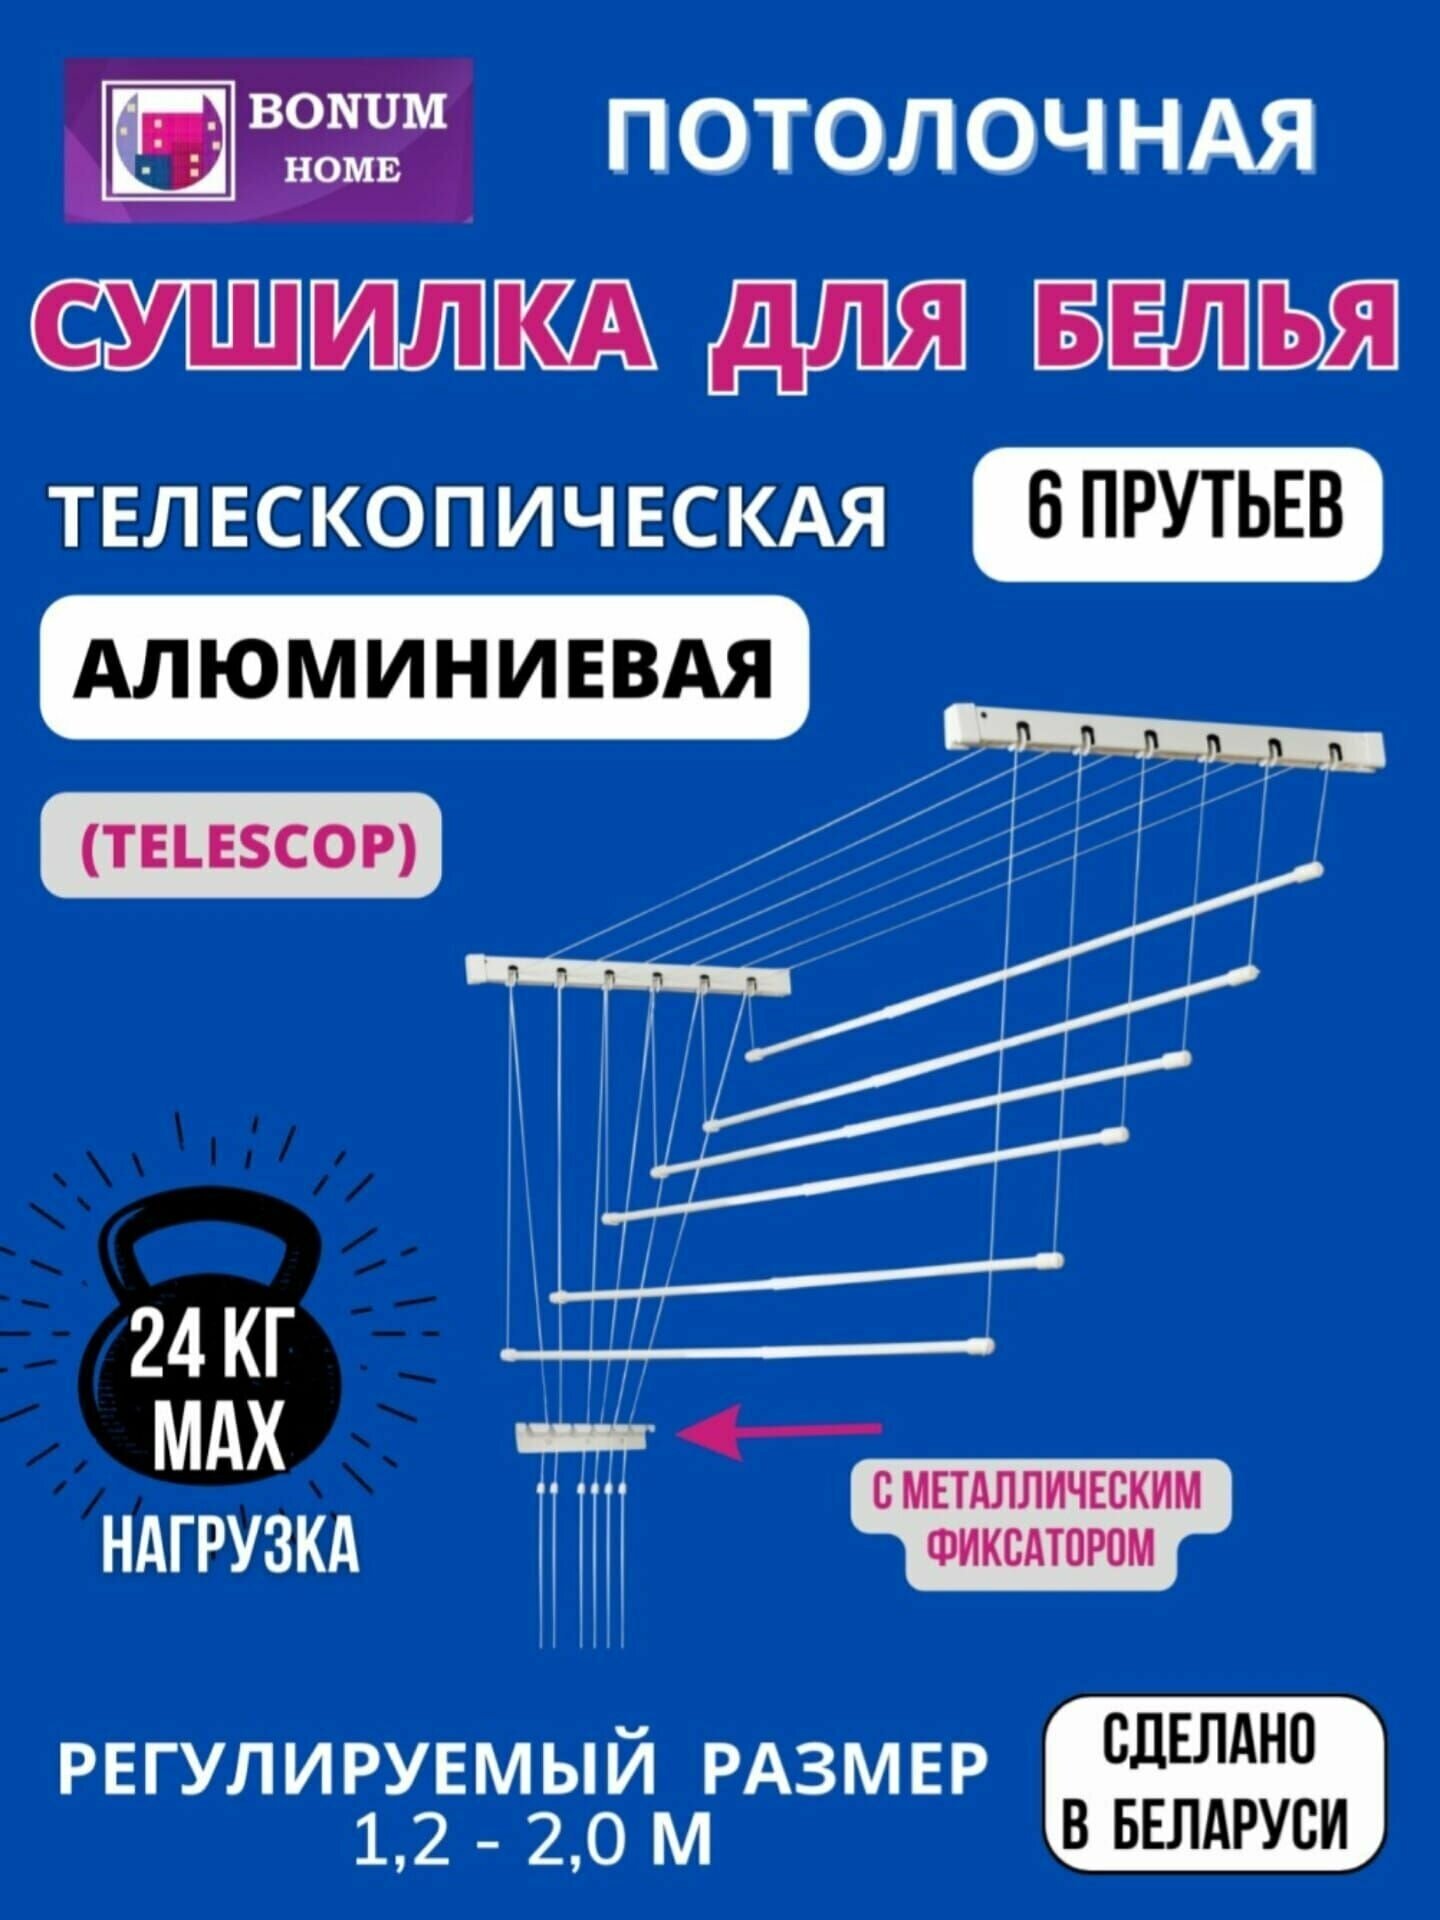 Сушилка для белья потолочная, белая, навесная, раздвижная, телескопическая, алюминиевая,1,2м-2м.6 прутьев. Беларусь.